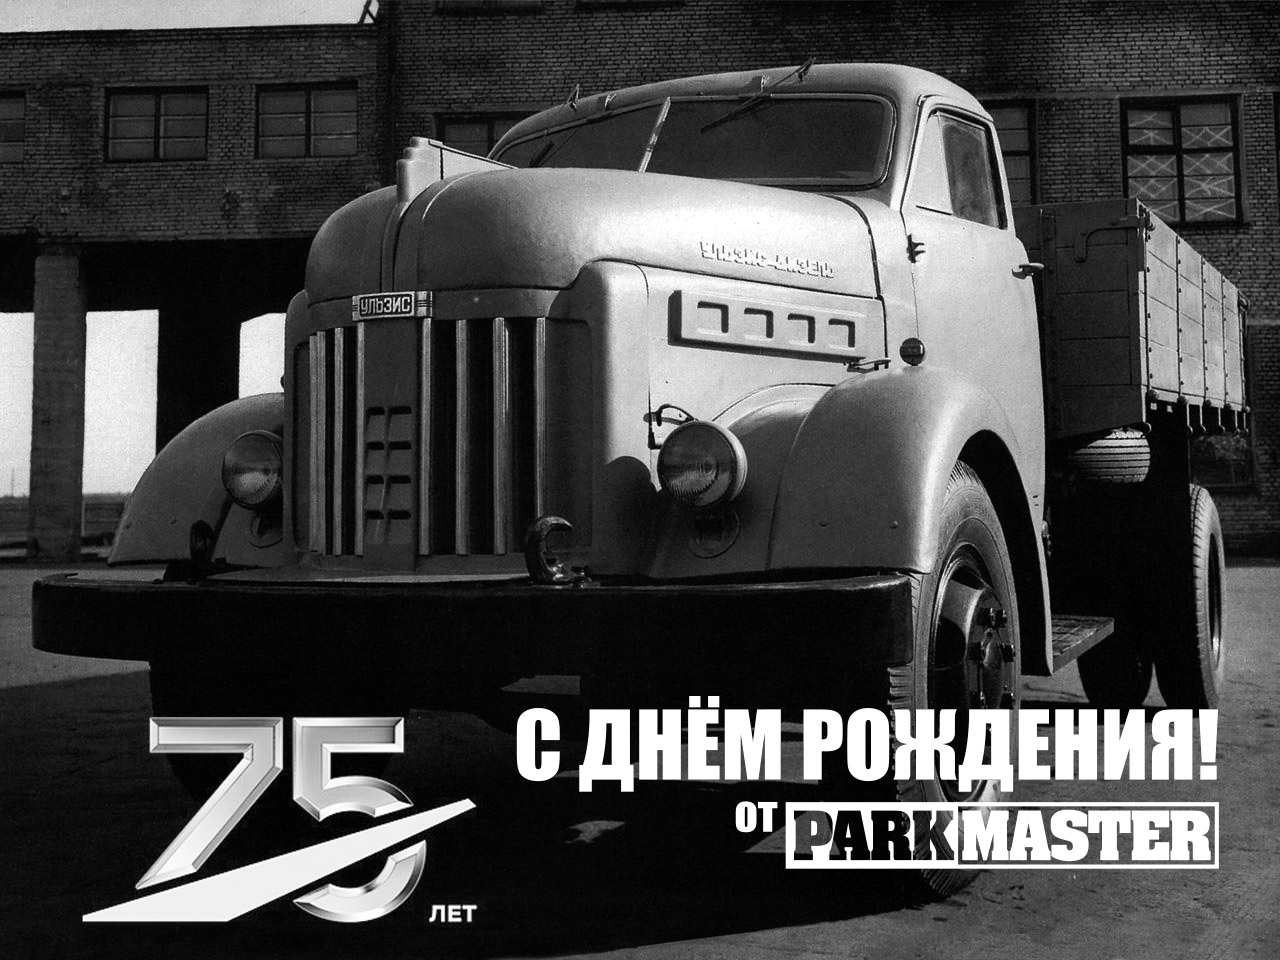 UAZ-75